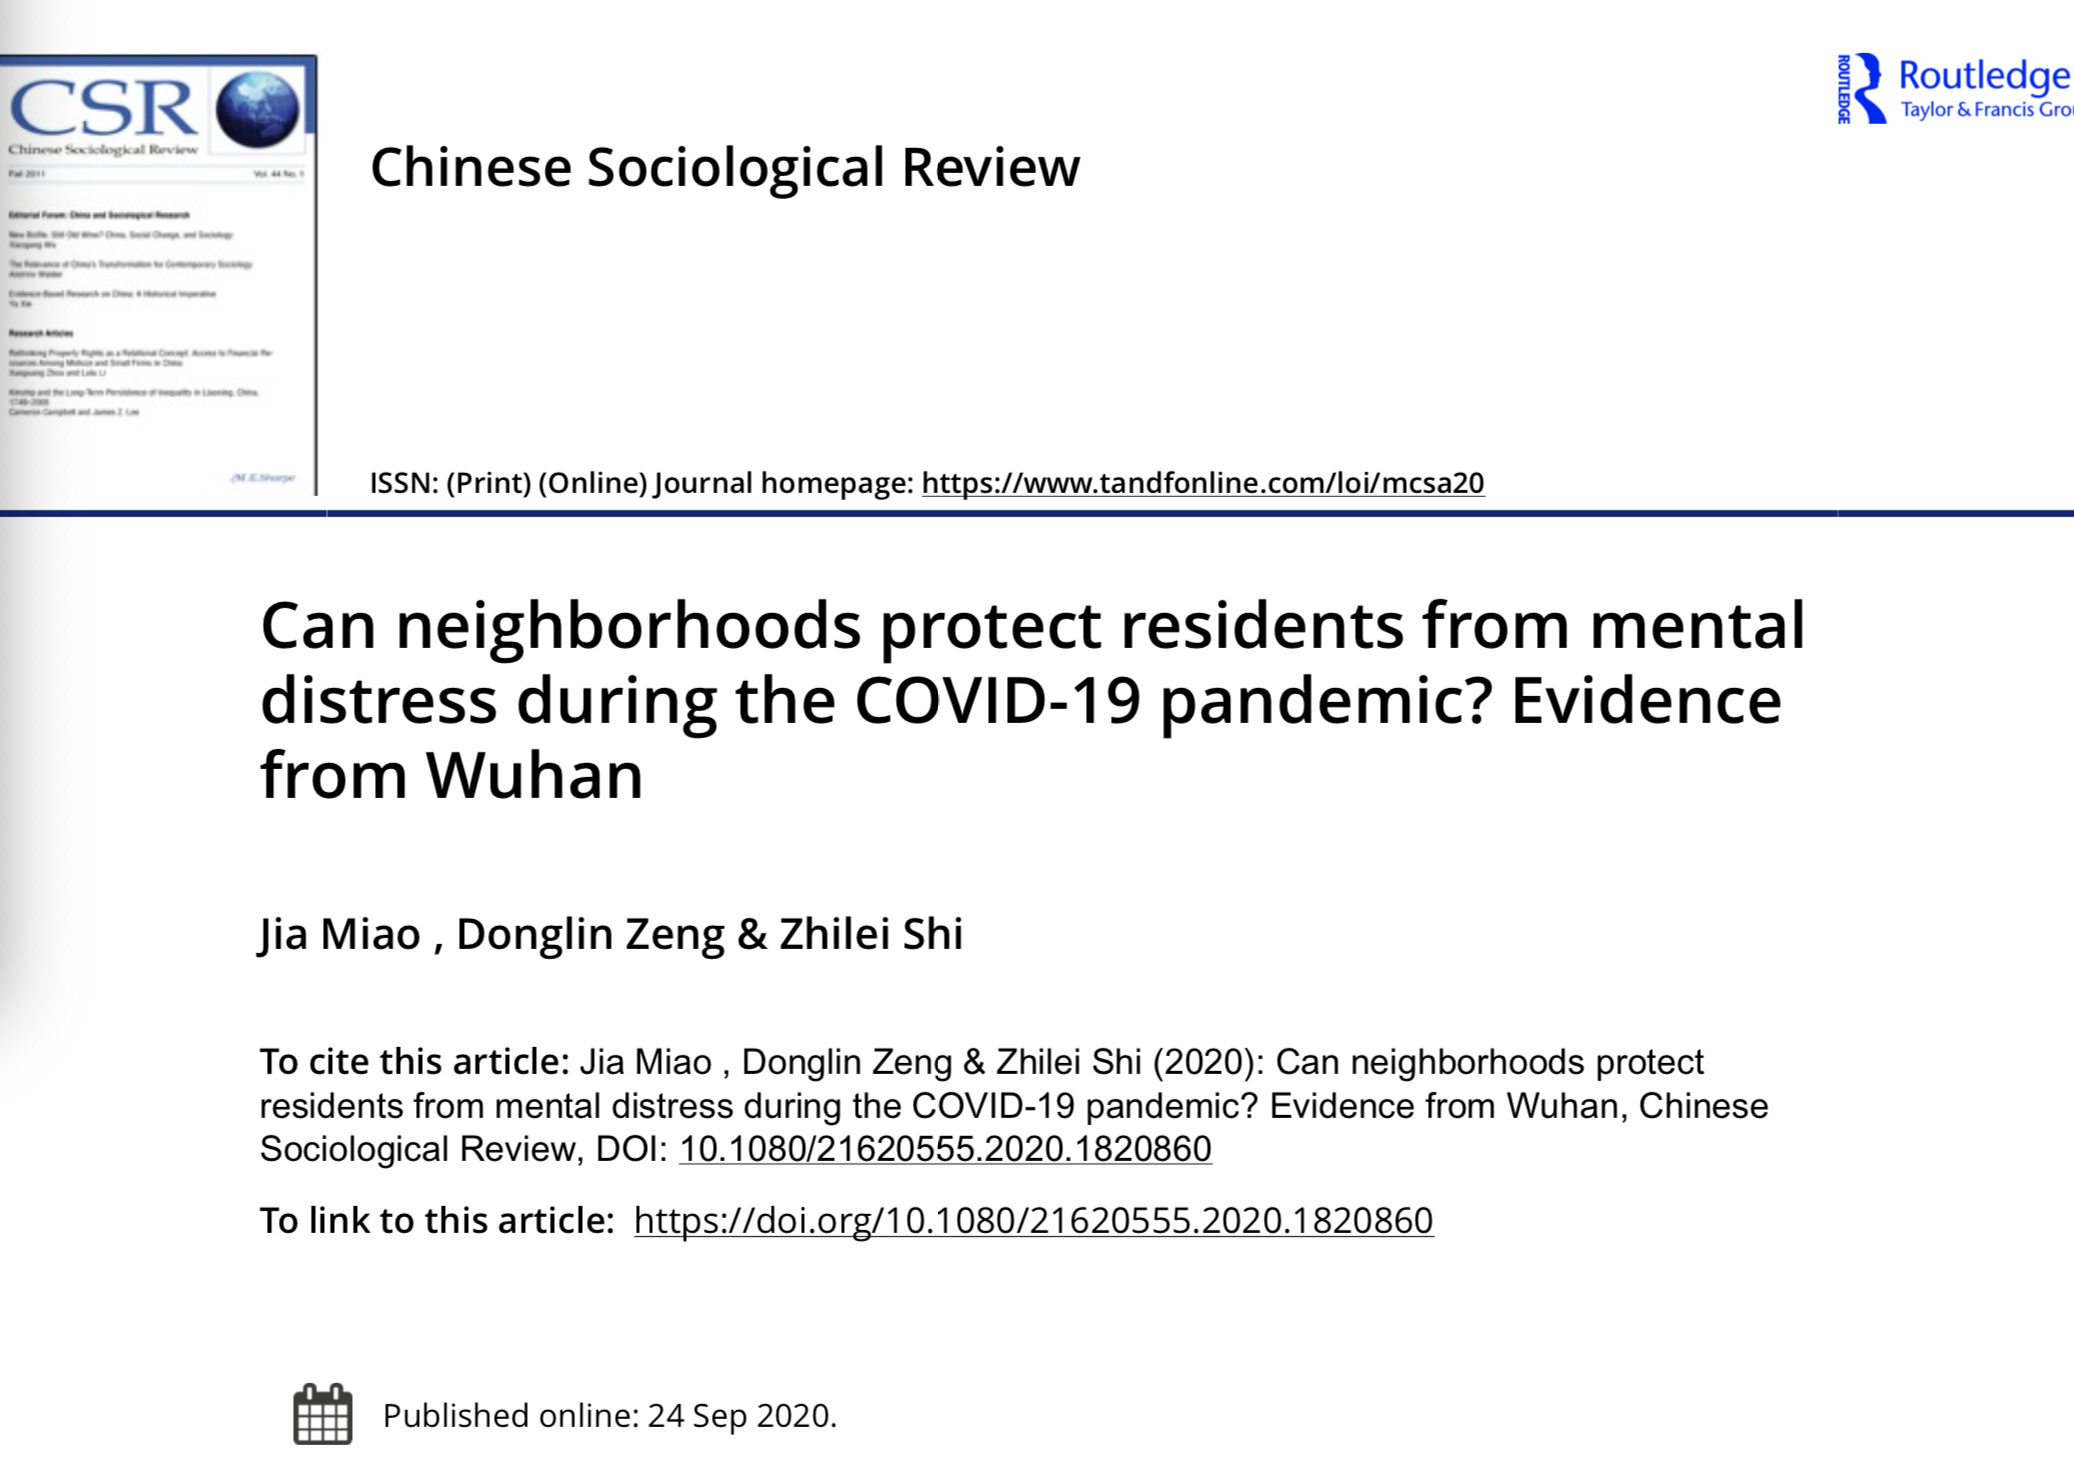 .研究成果近期发表于《中国社会学评论》的疫情特别专刊。 电子版专刊截图